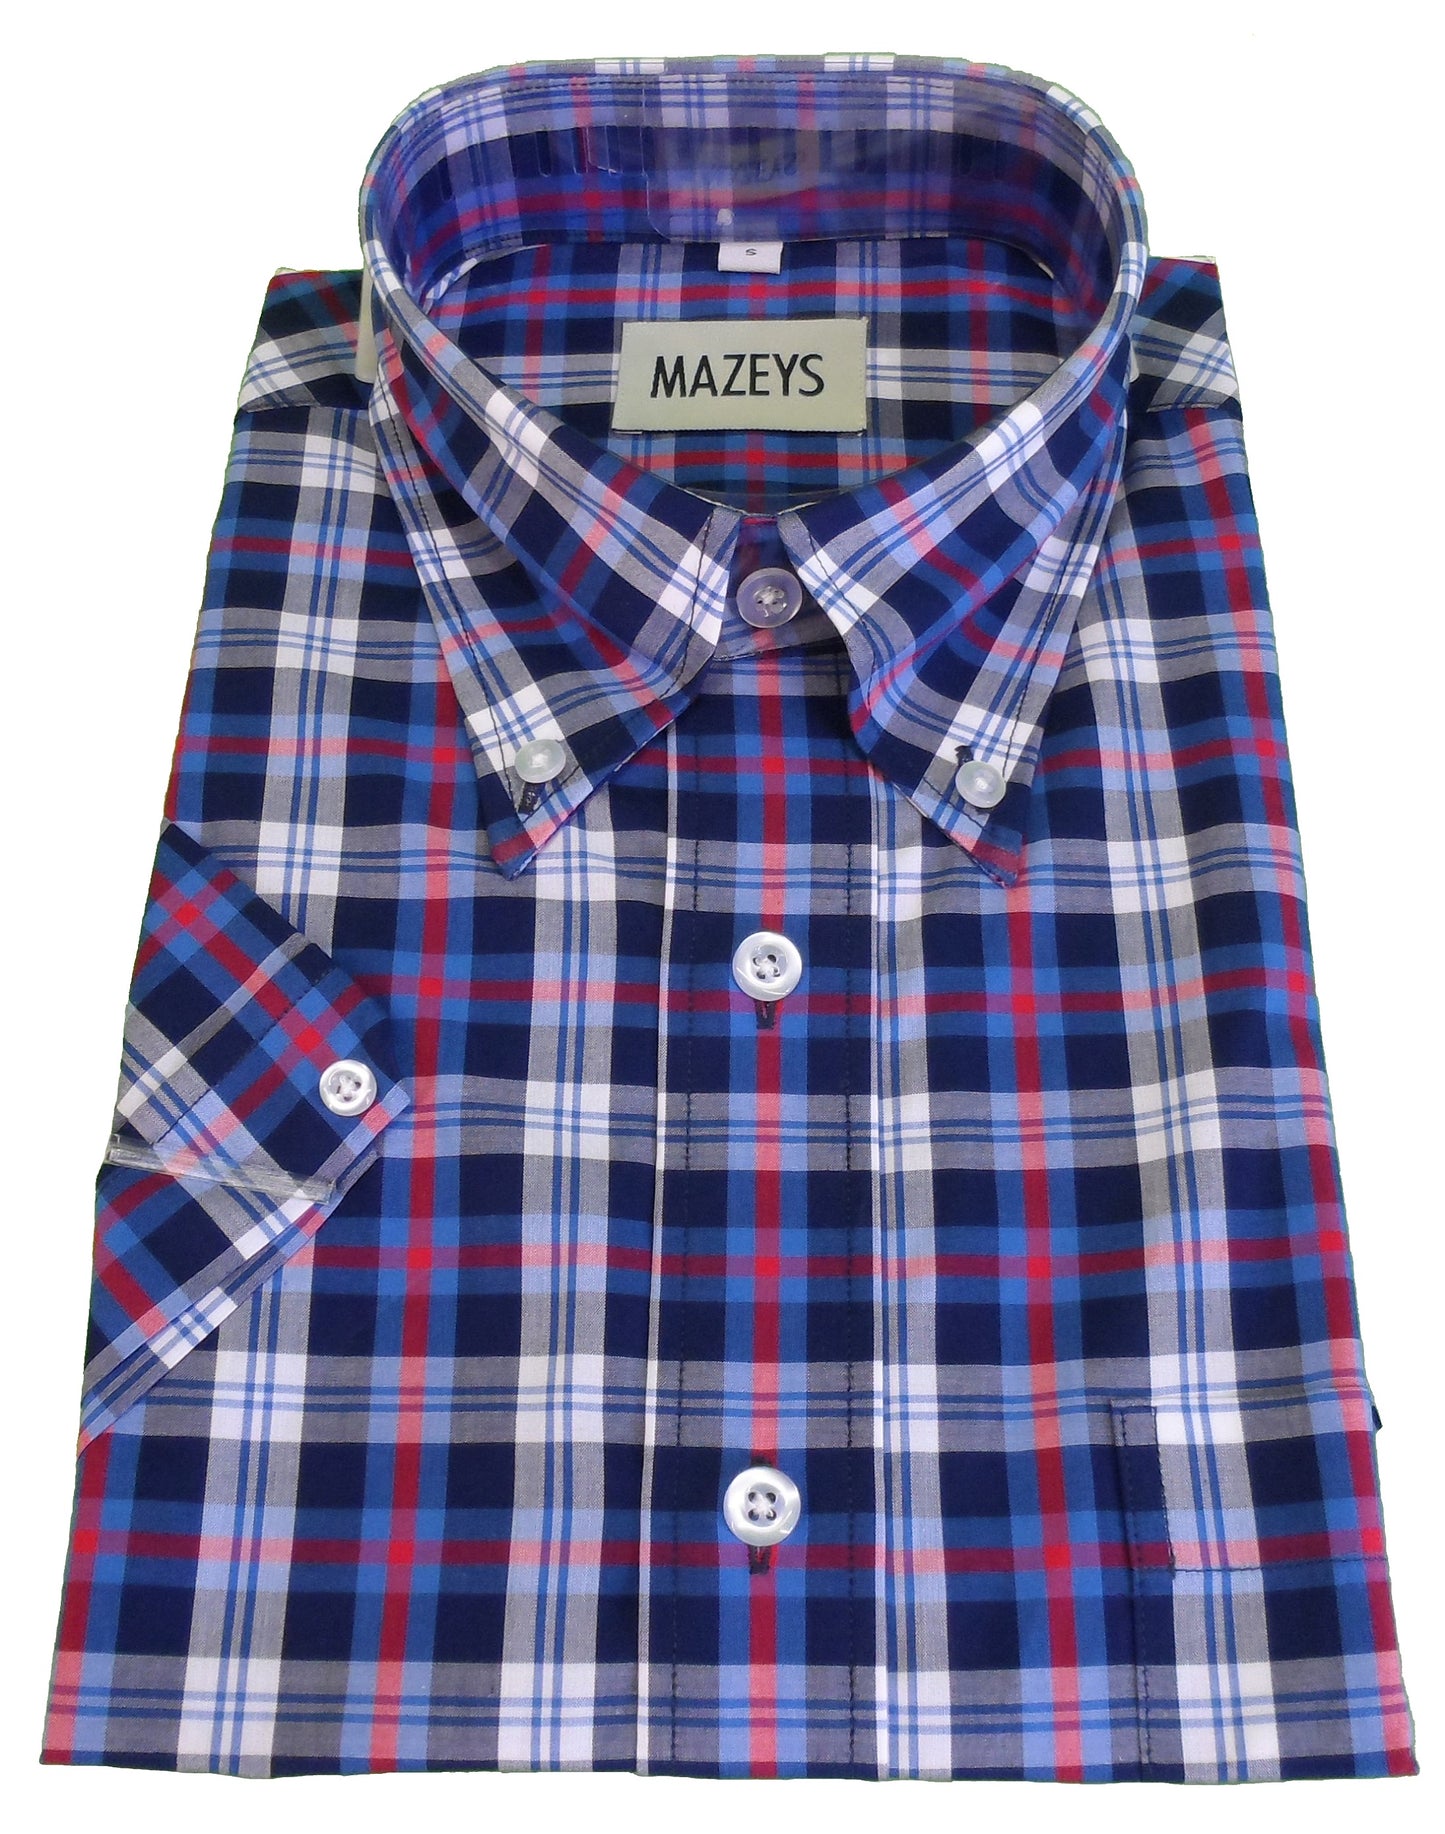 Mazeys Chemises À Manches Courtes Homme Bleu/Blanc/Rouge 100% Coton